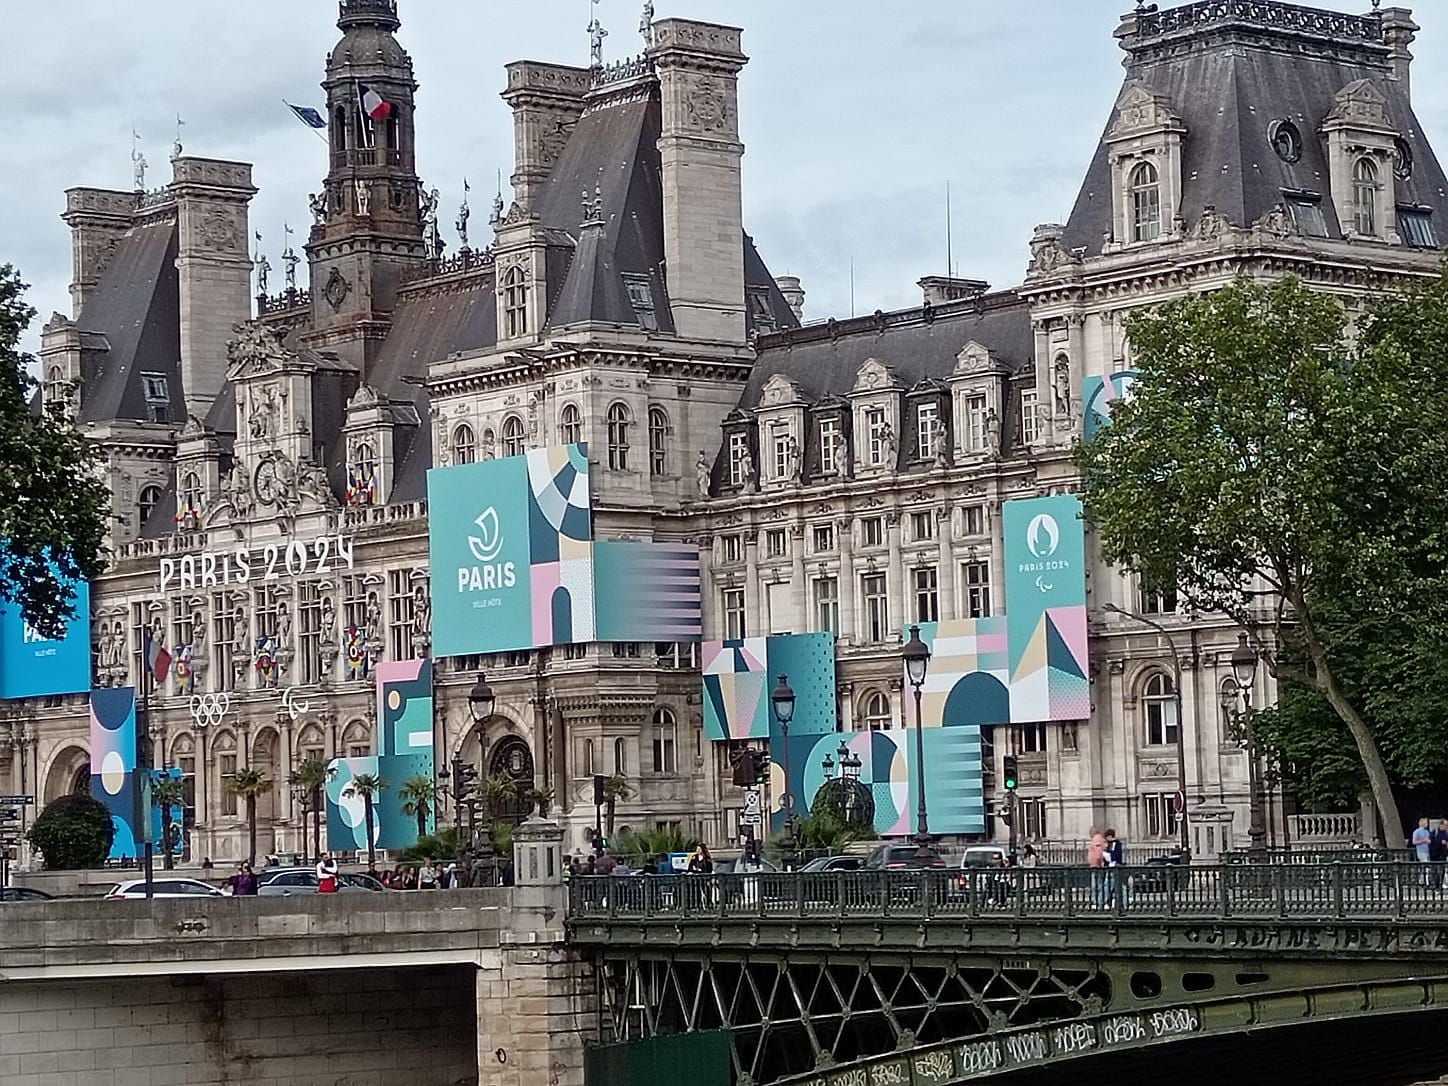 El ayuntamiento de París se viste con los colores y logos de París 2024.

Fotografía: Irene Rodríguez Salas